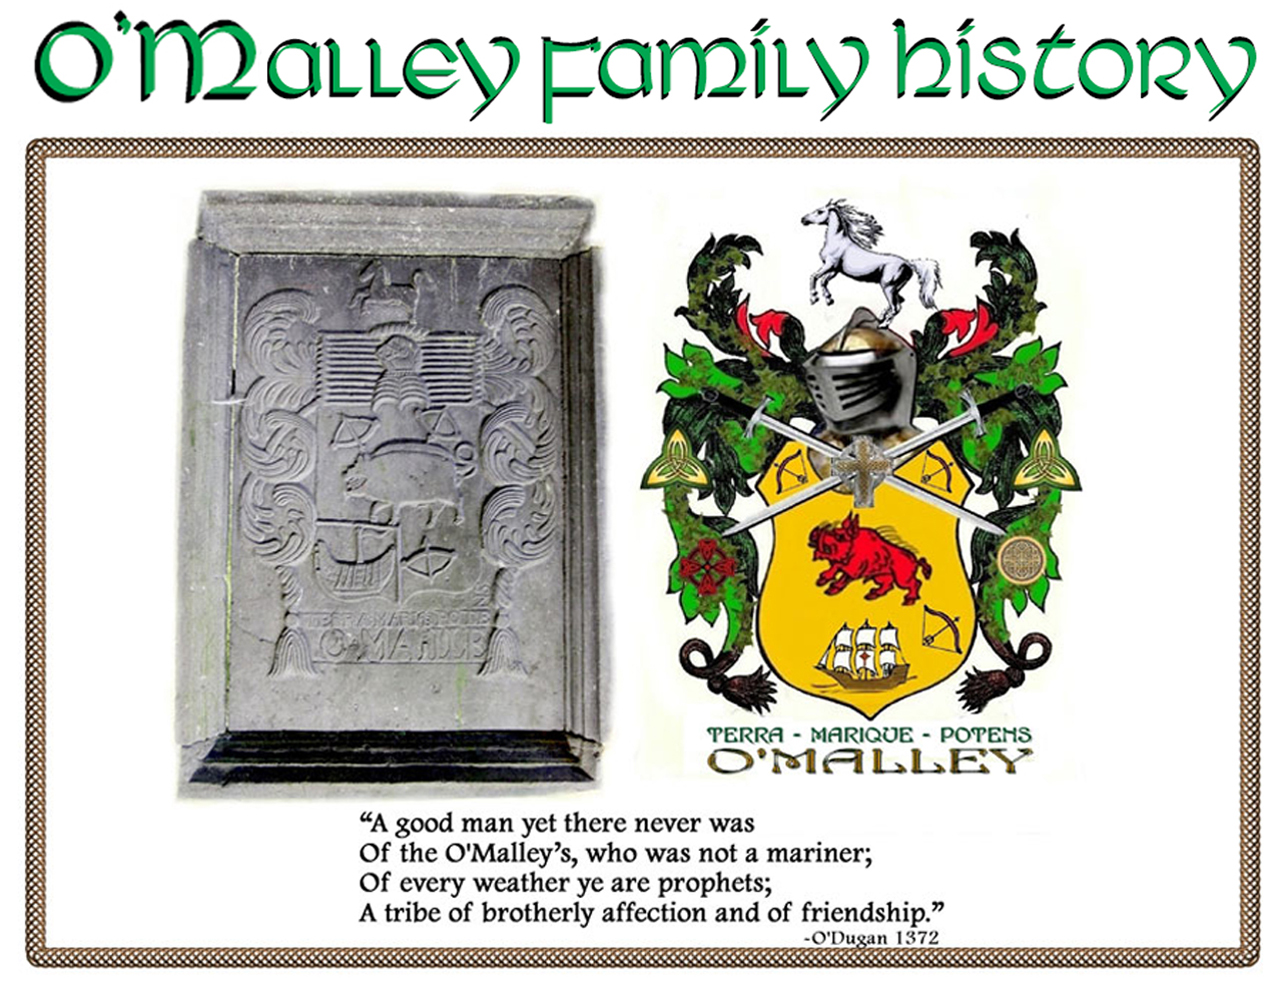 O'Malley Family History